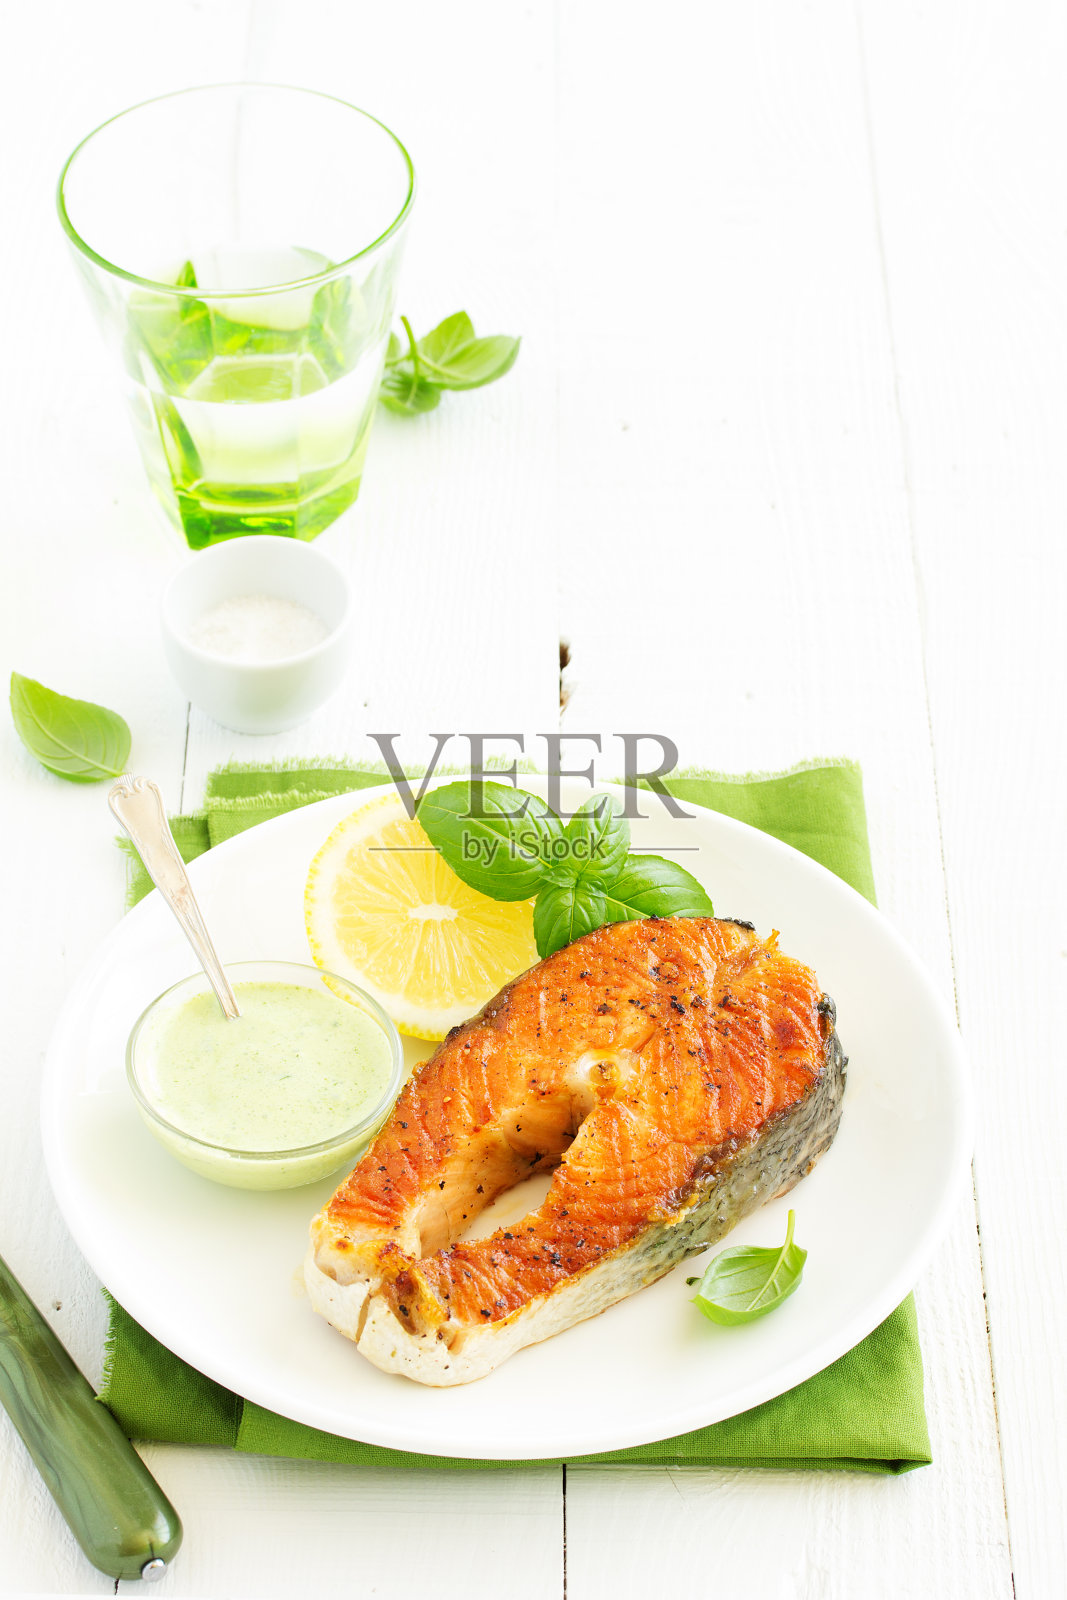 一块龙蒿酱烤鲑鱼。照片摄影图片